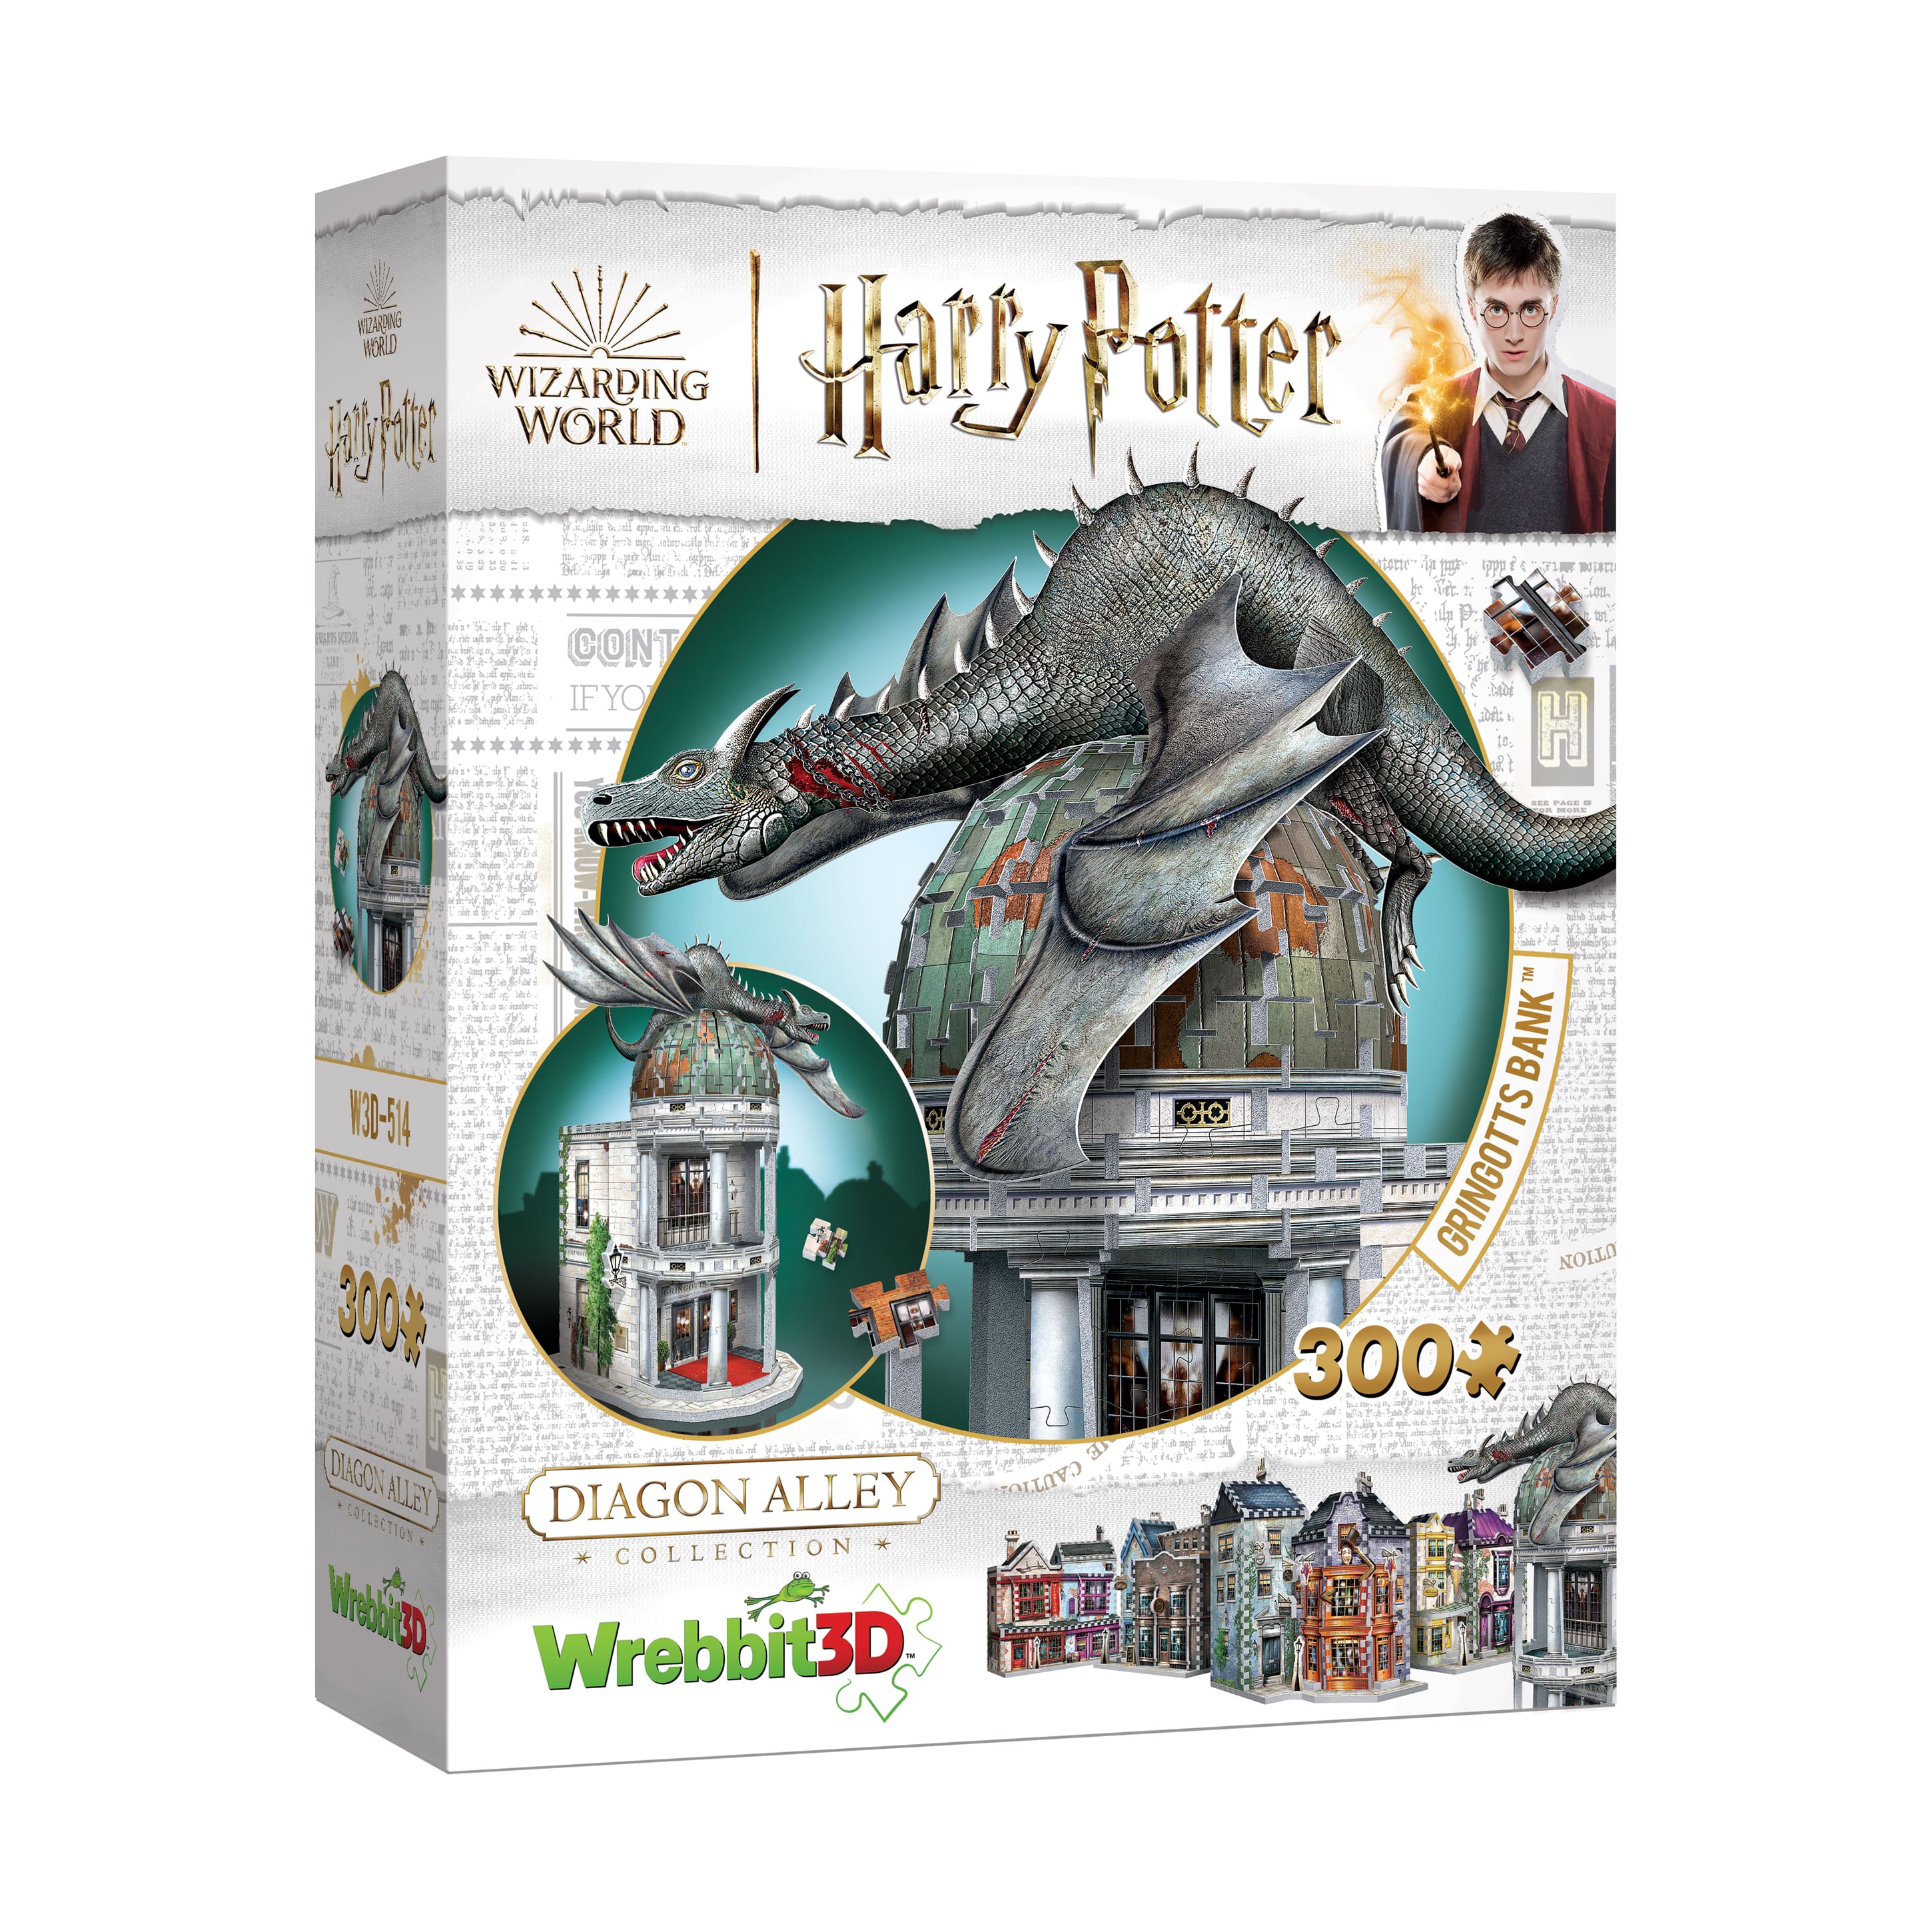 Harry Potter Diagon Alley Collection - Gringotts Bank 3D Puzzle: 300 Pcs